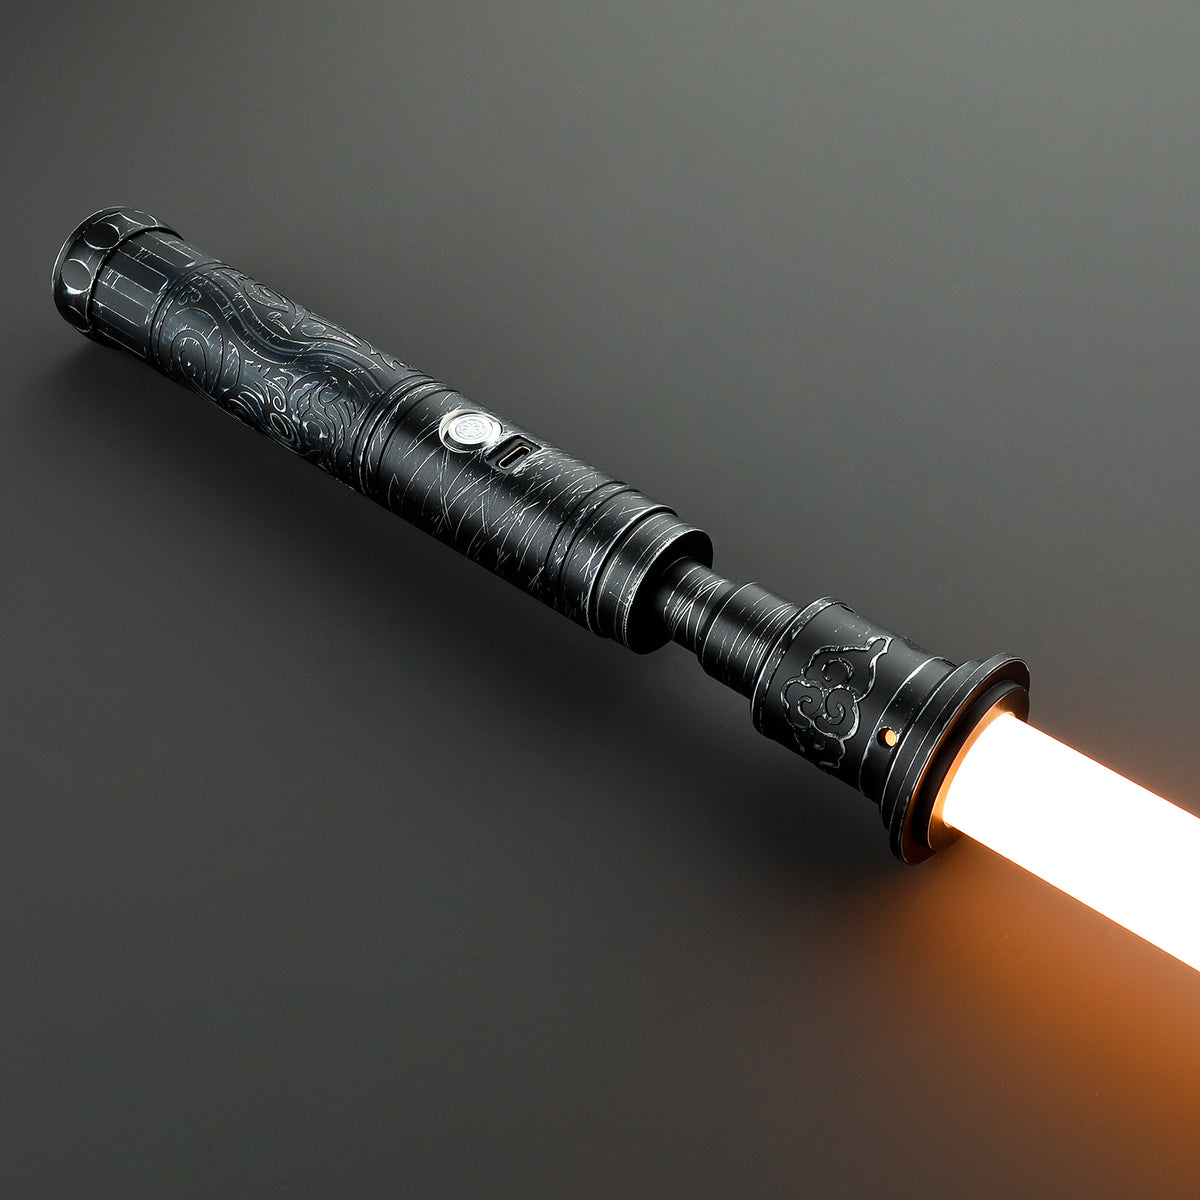 SaberCustom Luke Skywalker Lightsaber Xenopixel v3 Light Saber Infinite Colors Changing HX016